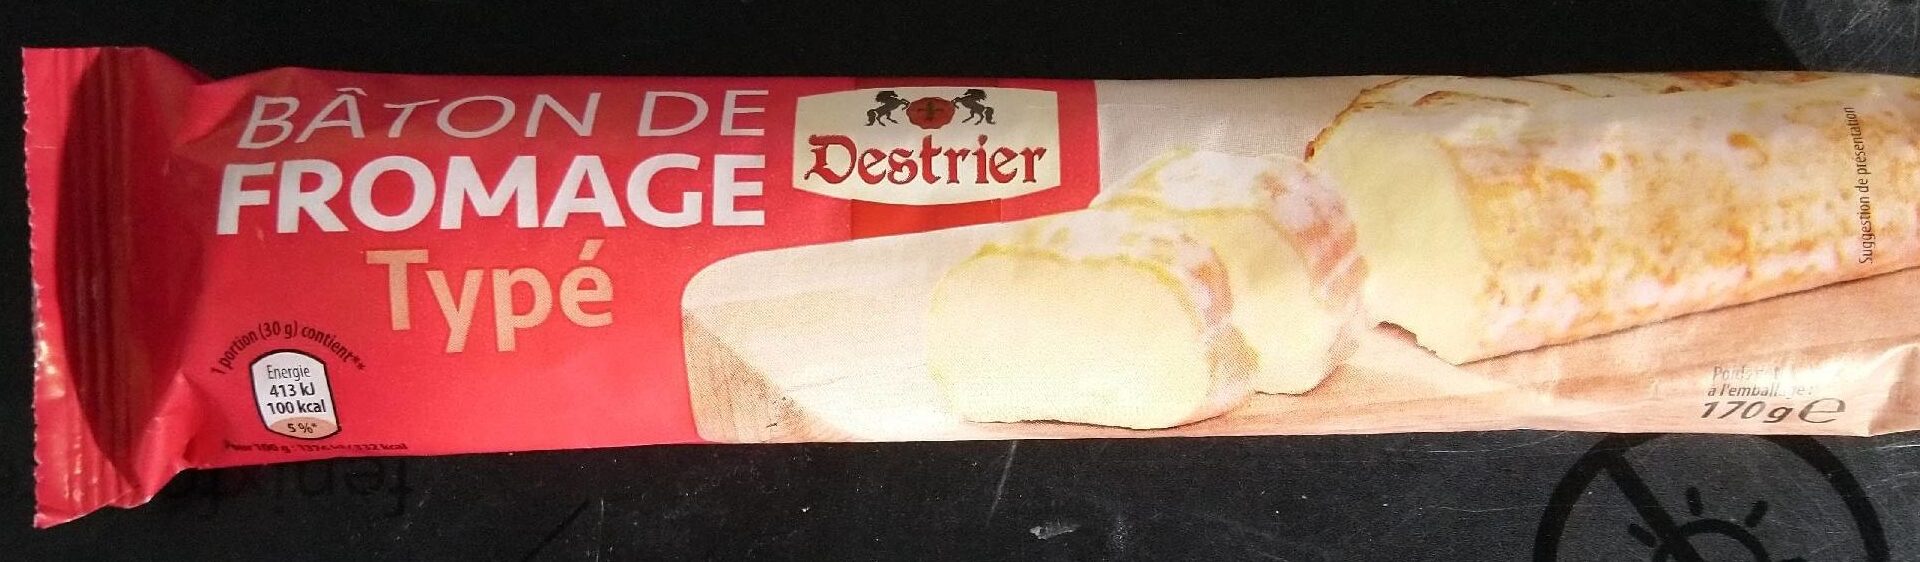 Bâton de fromage typé - Producte - fr